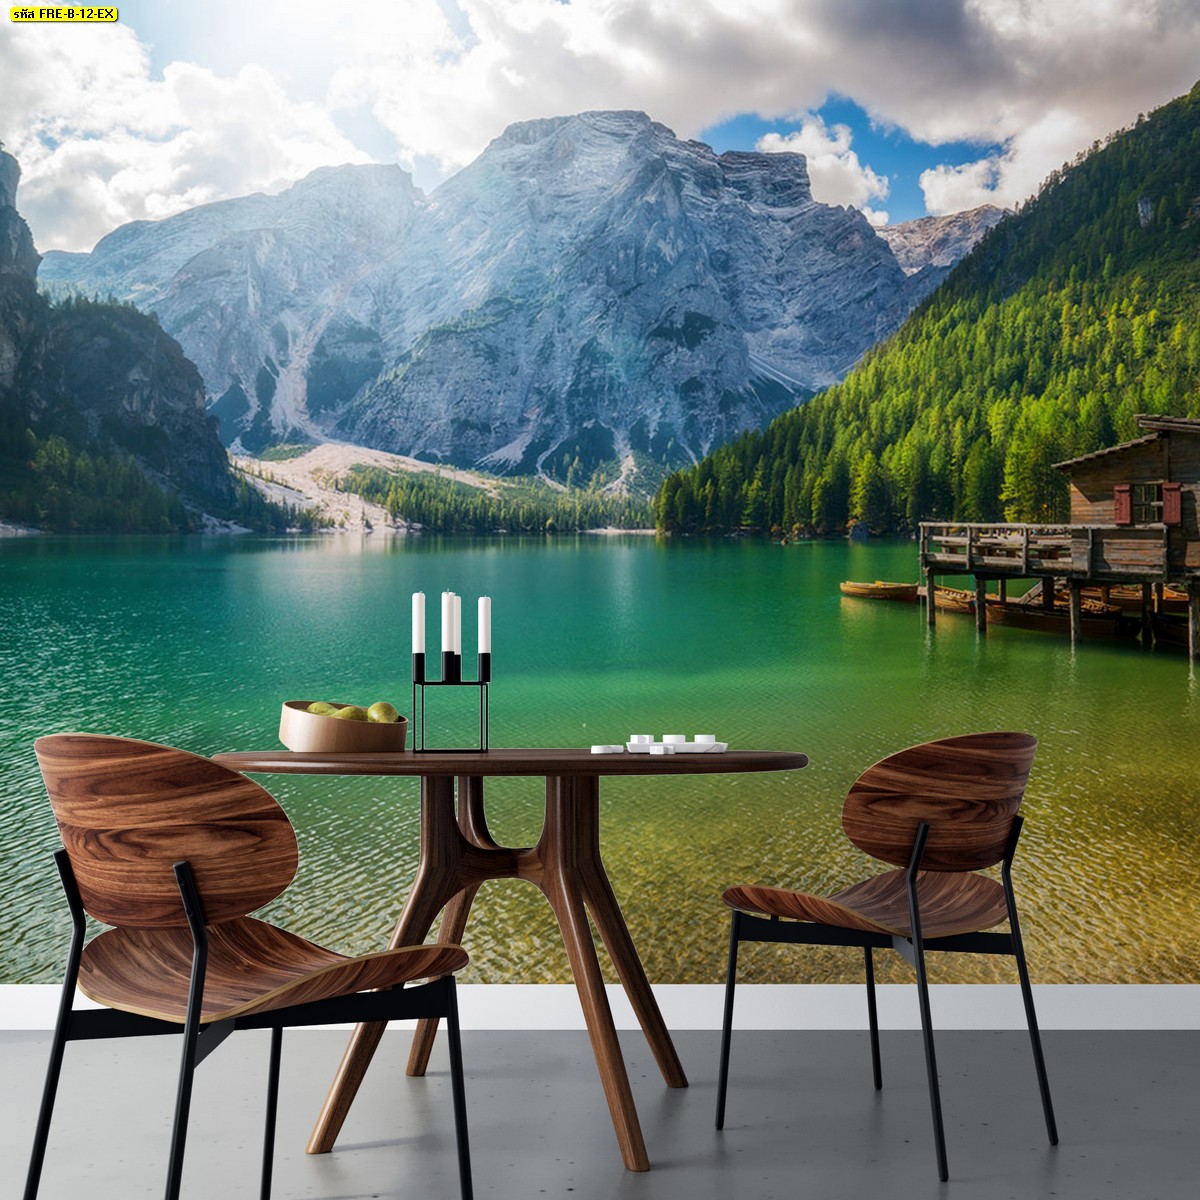 โต๊ะลายไม้สีเข้มในห้องรับประทานอาหาร ประดับวอลเปเปอร์สั่งพิมพ์ลายธรรมชาติทะเลสาบและภูเขาในวันที่เมฆเยอะ